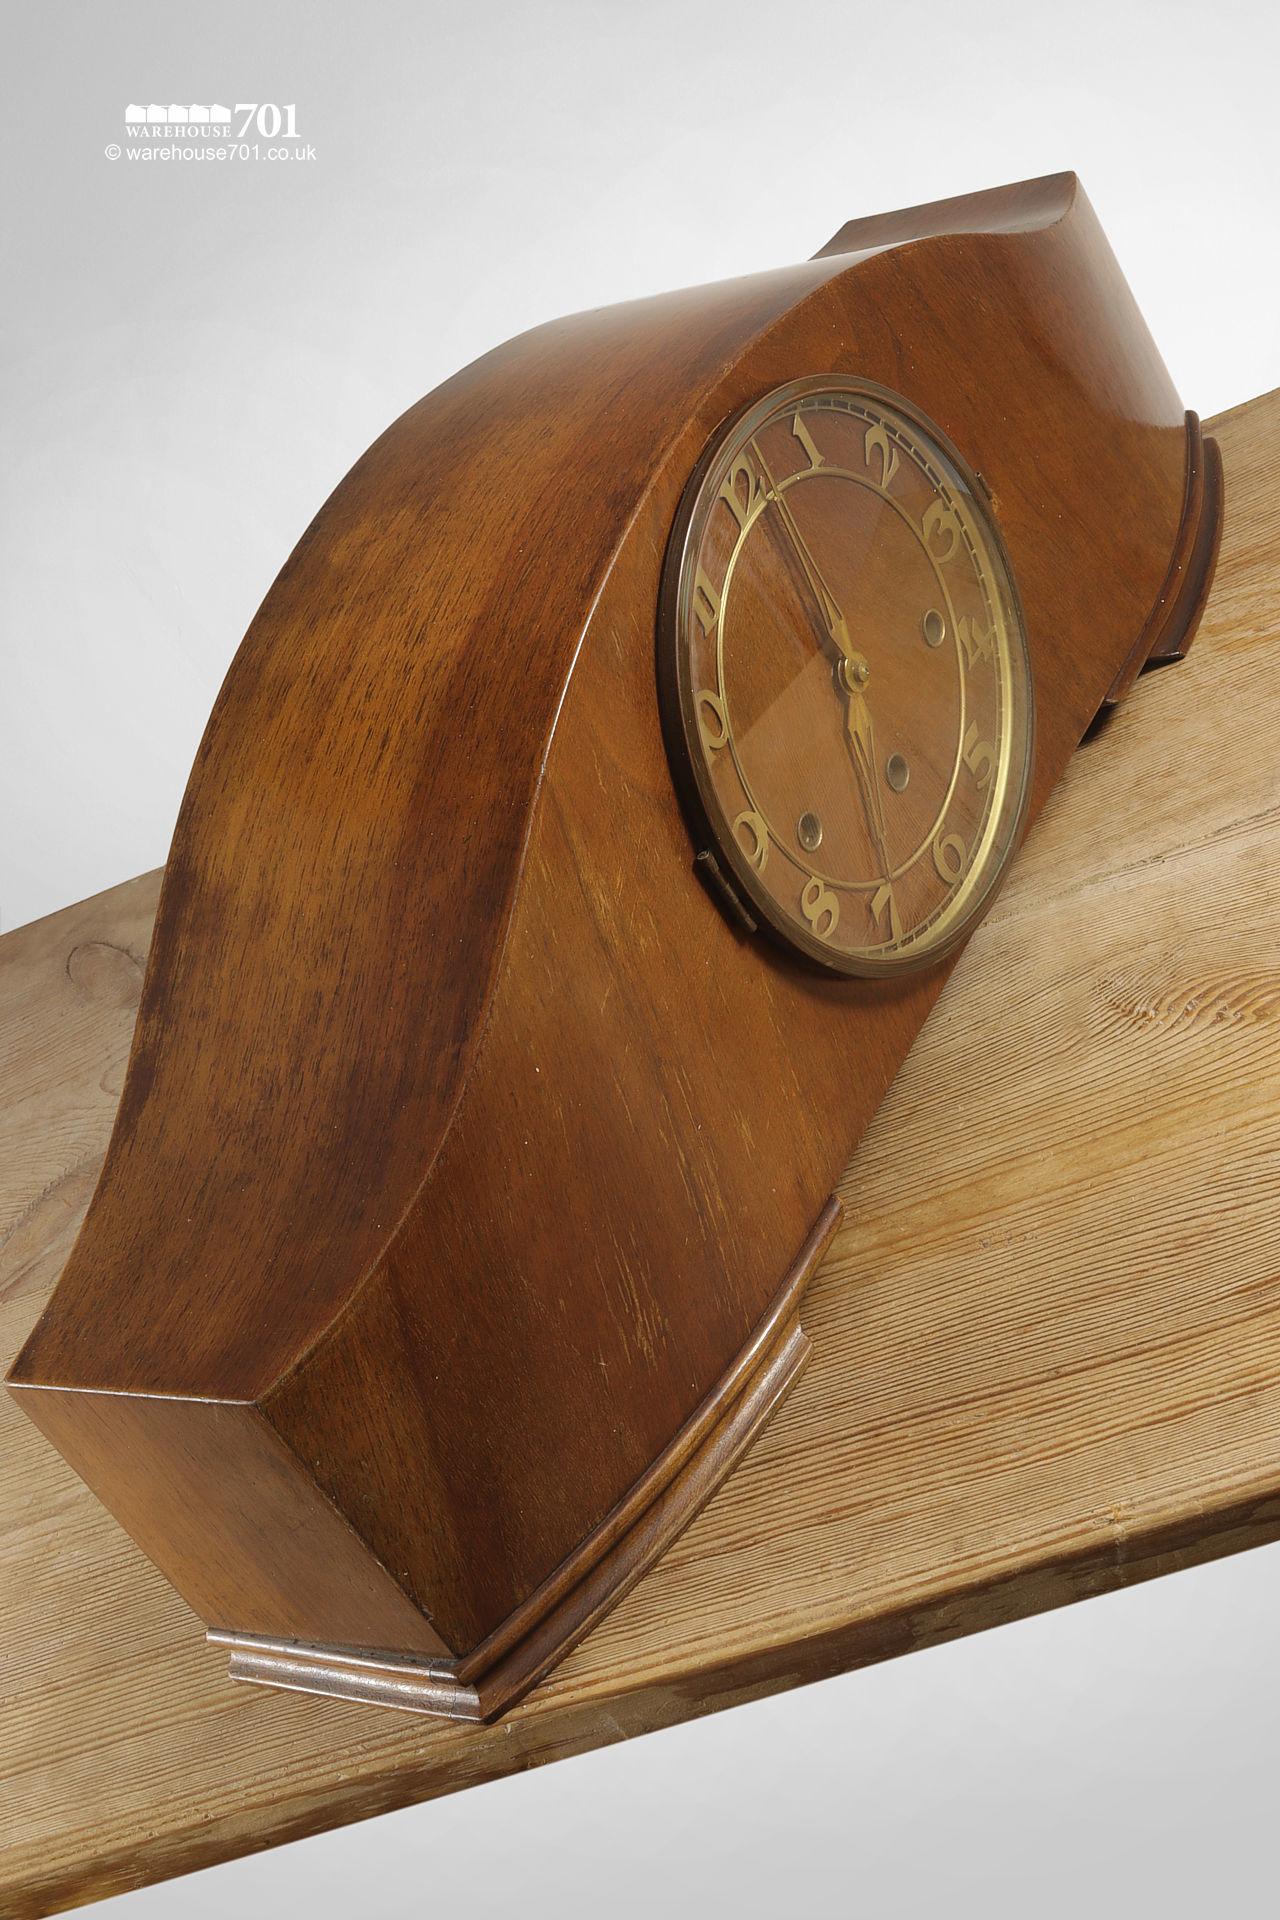 Elegant Art Deco 1930s/1940s Mantel Clock #2